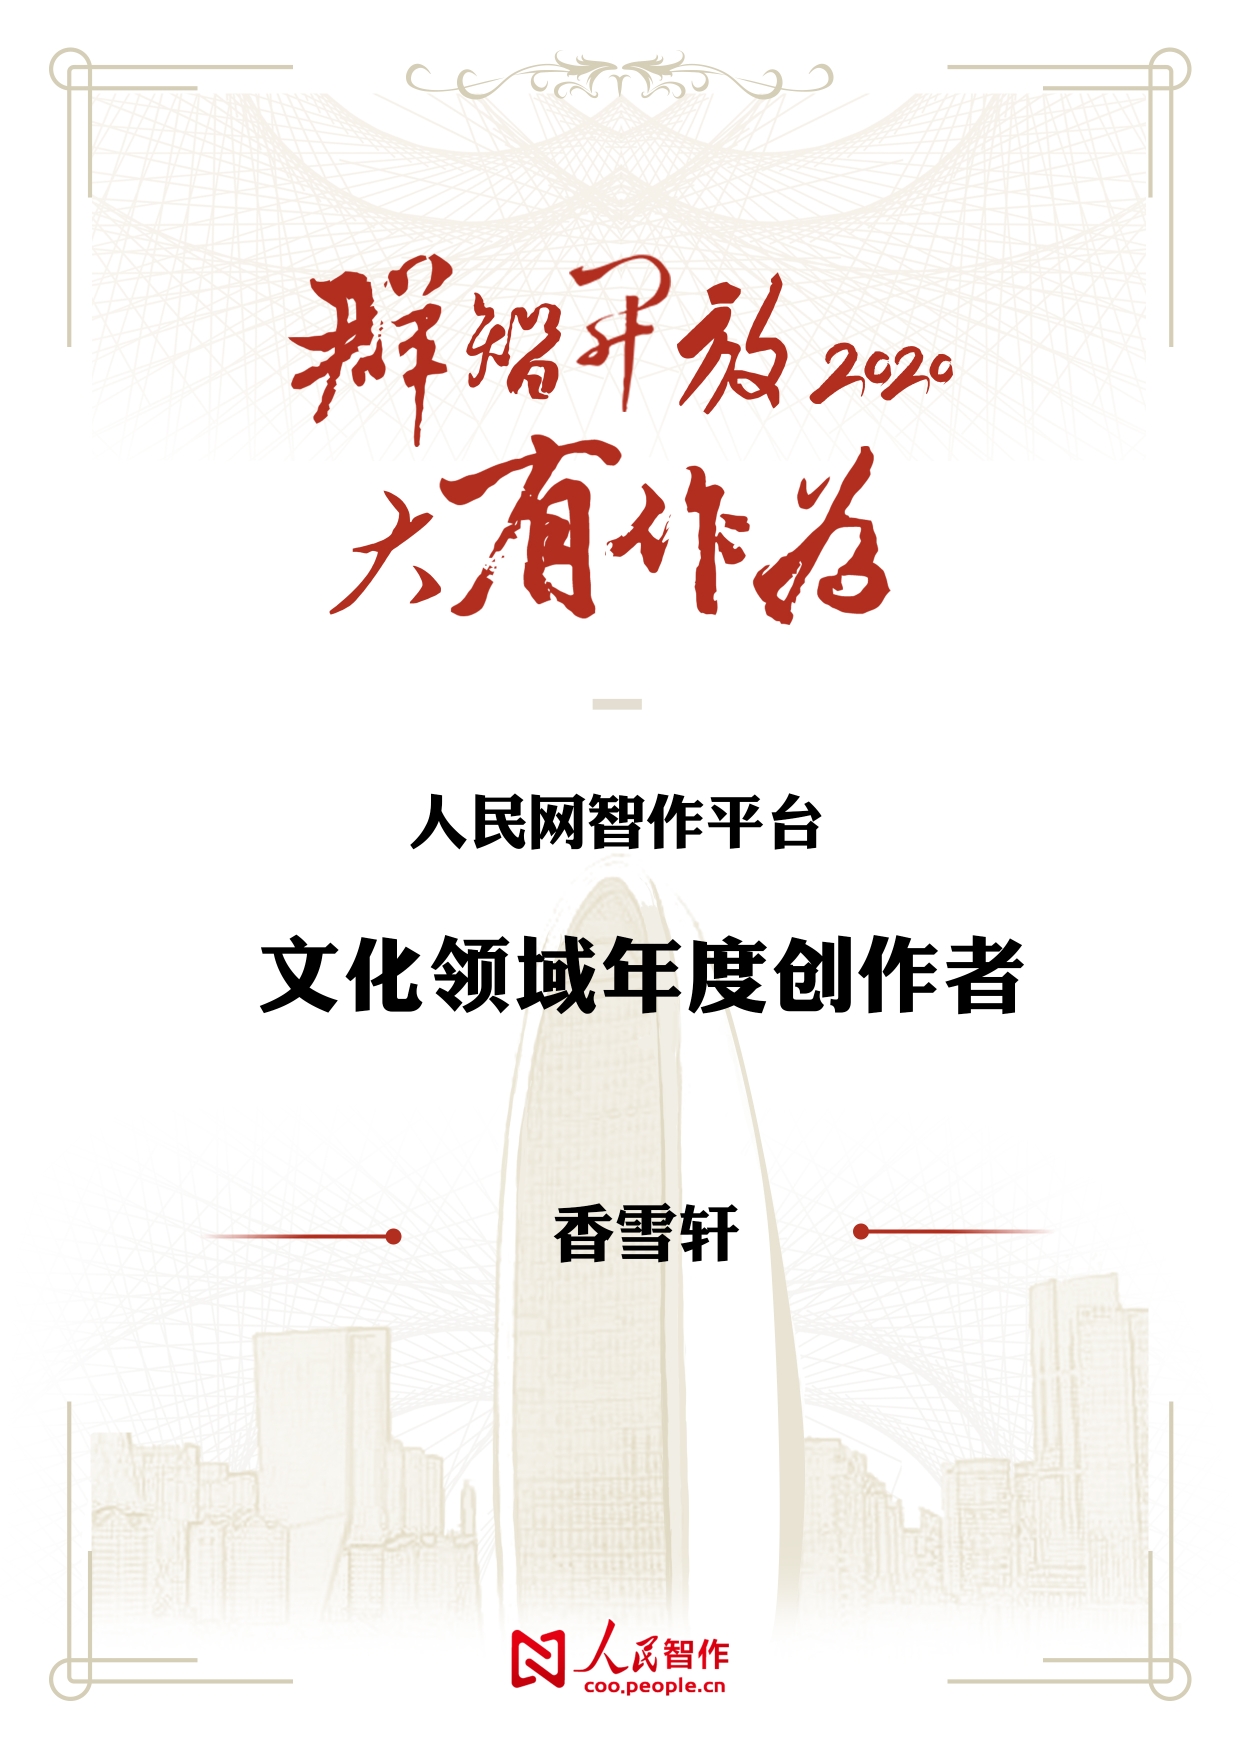 【香雪轩】荣获人民网智作平台文化领域年度创作者荣誉称号